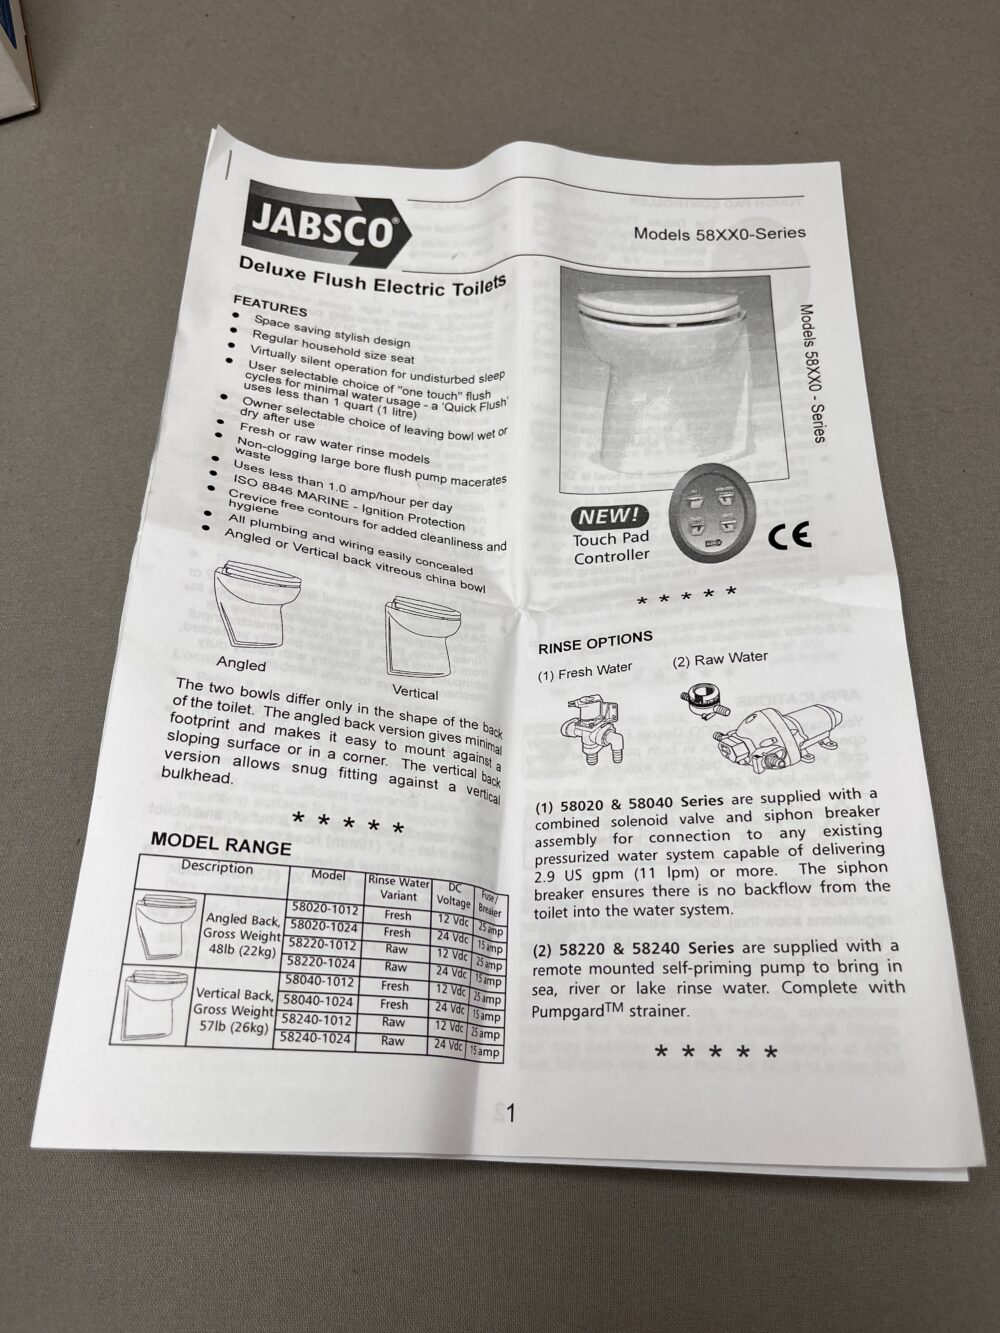 Jabsco Deluxe Flush Control Kit 12v & 24v 58029-1001